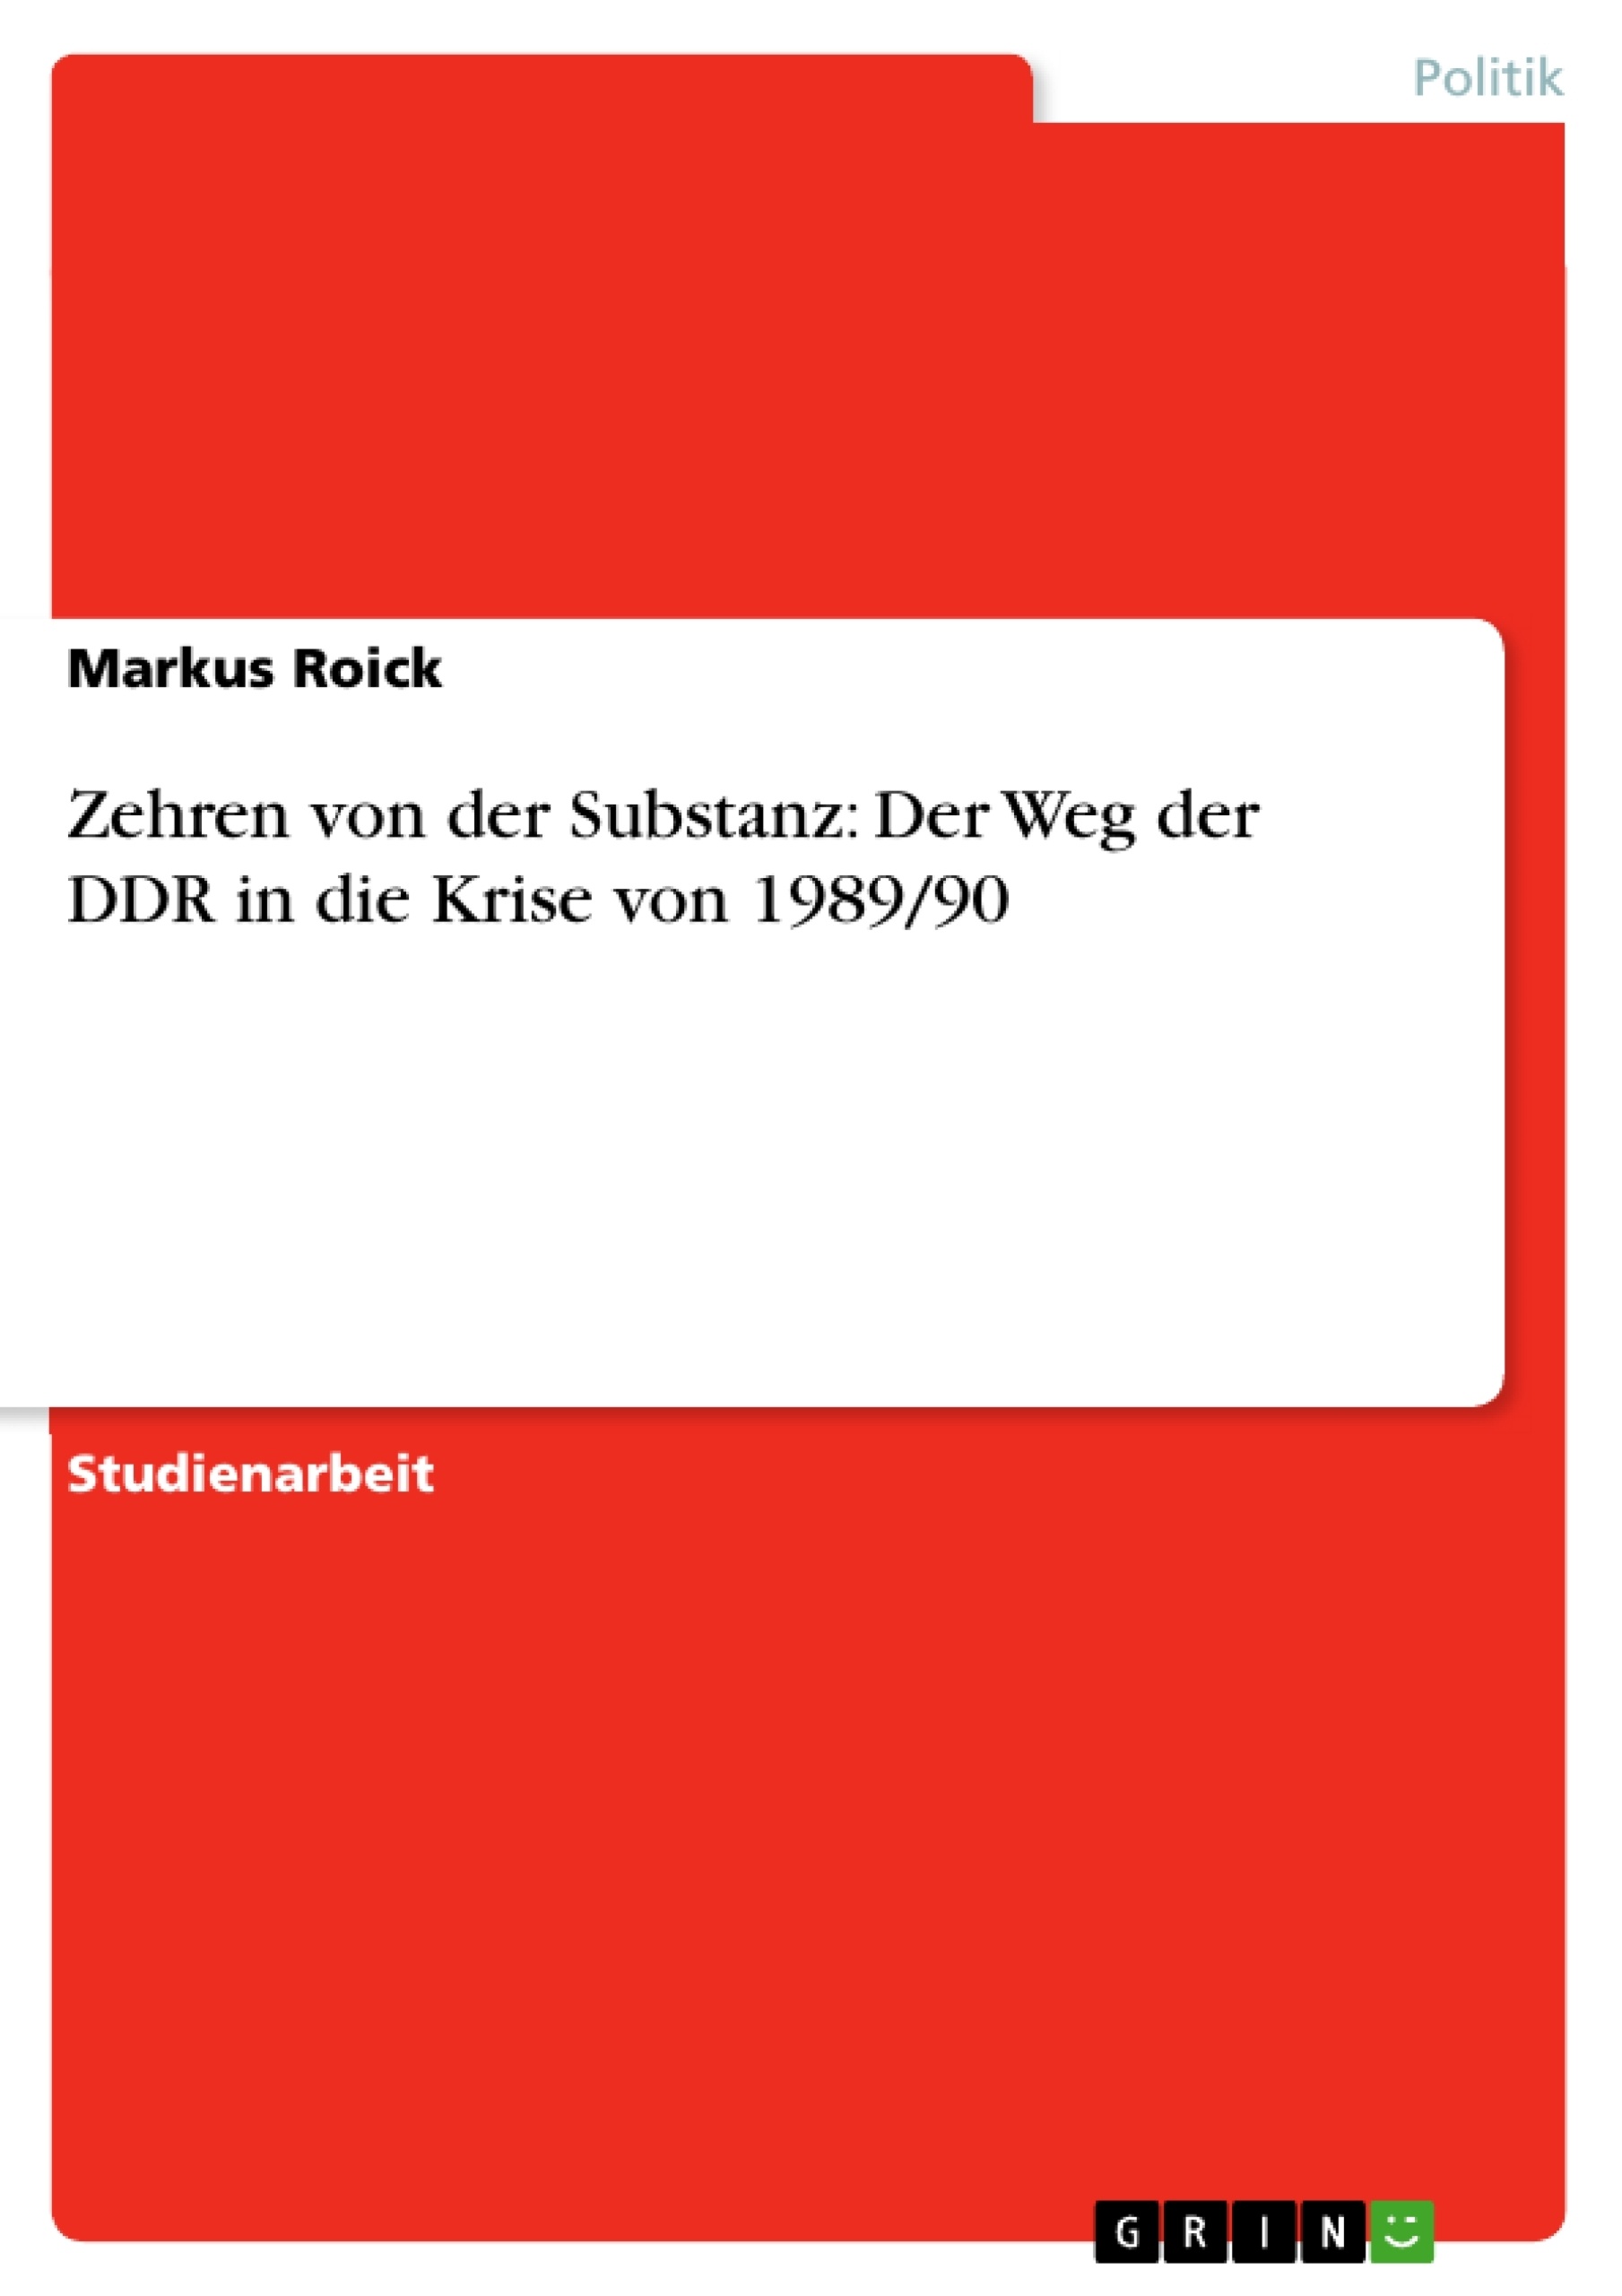 Titre: Zehren von der Substanz: Der Weg der DDR in die Krise von 1989/90